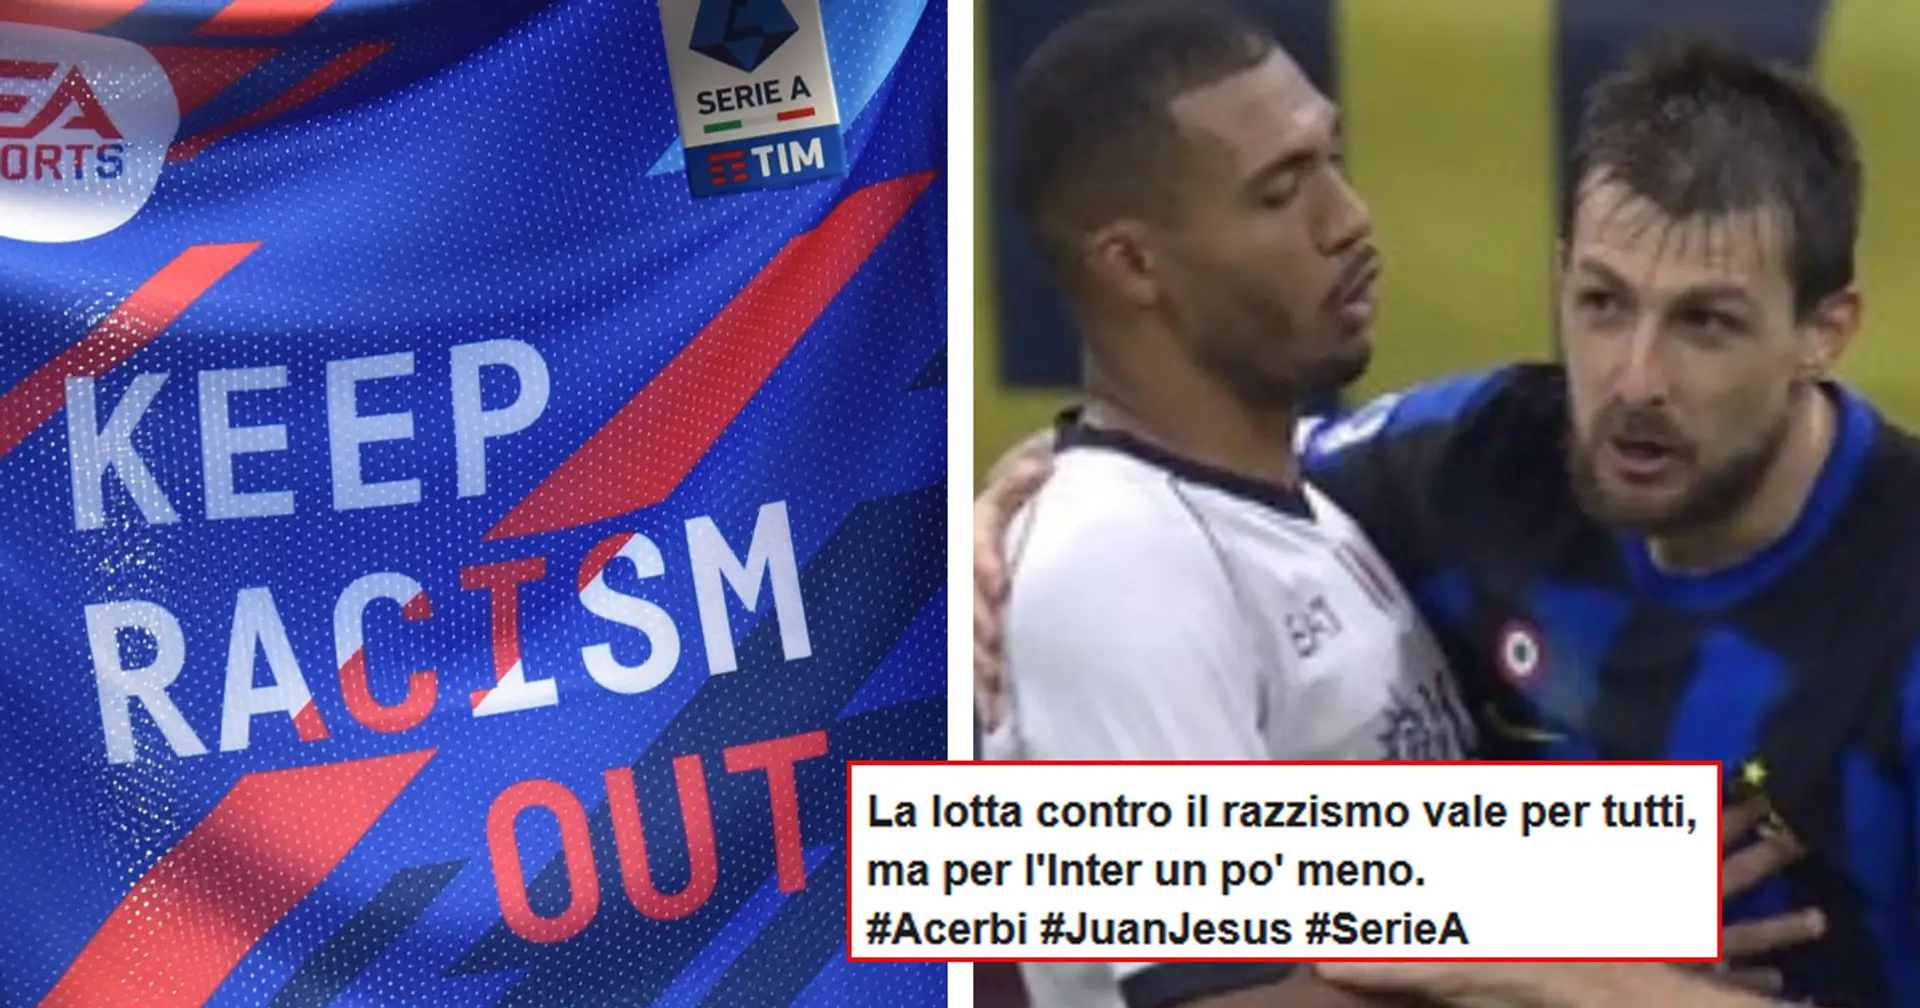 Acerbi assolto dalle accuse di razzismo dopo Inter-Napoli, la rabbia dei tifosi del Milan: "Lo schifo continua"